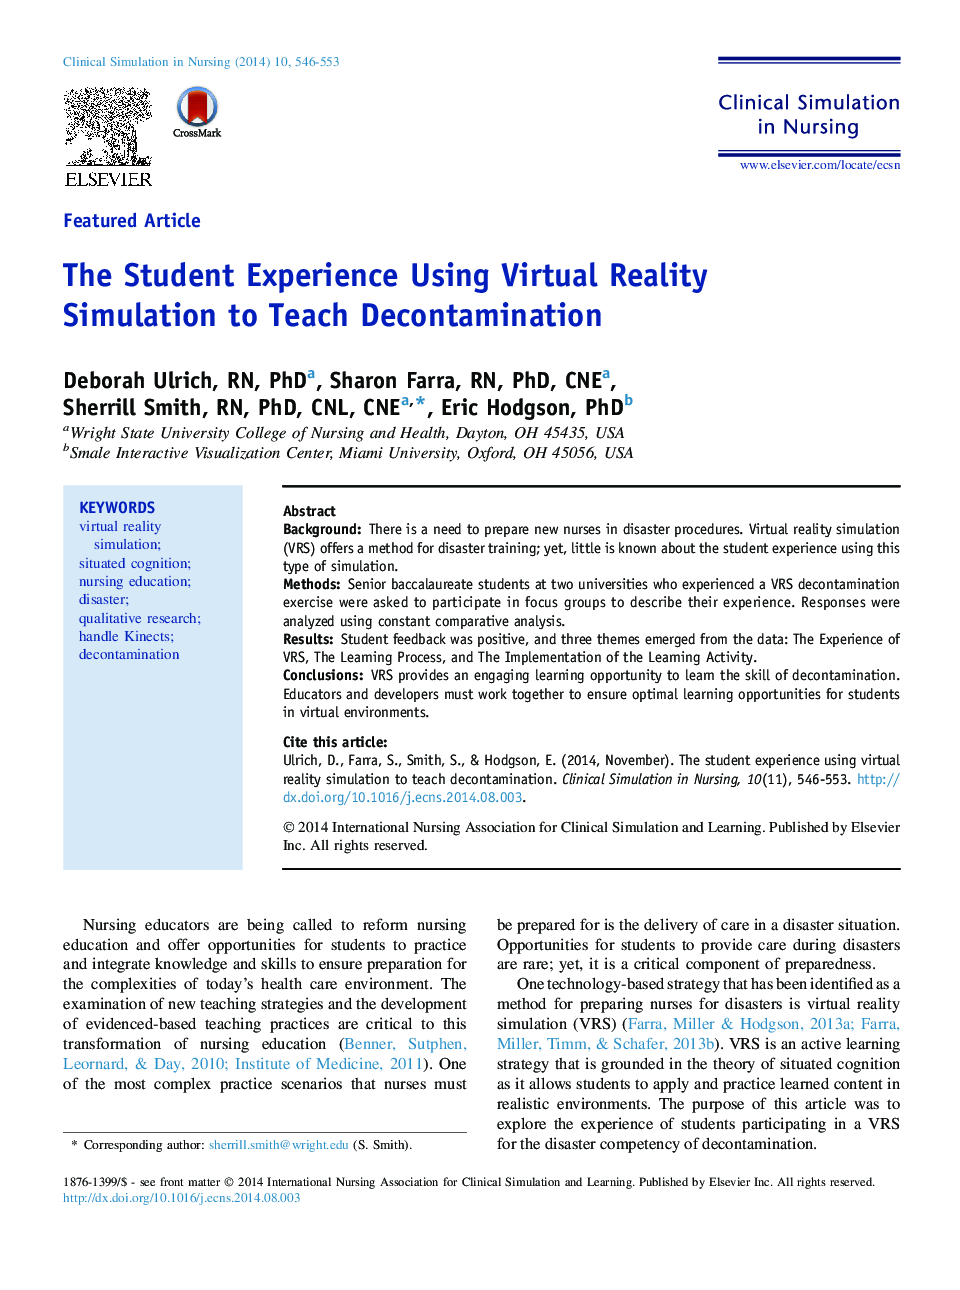 تجربه دانشجویی با استفاده از شبیه سازی واقعیت مجازی برای آموزش فاجعه 